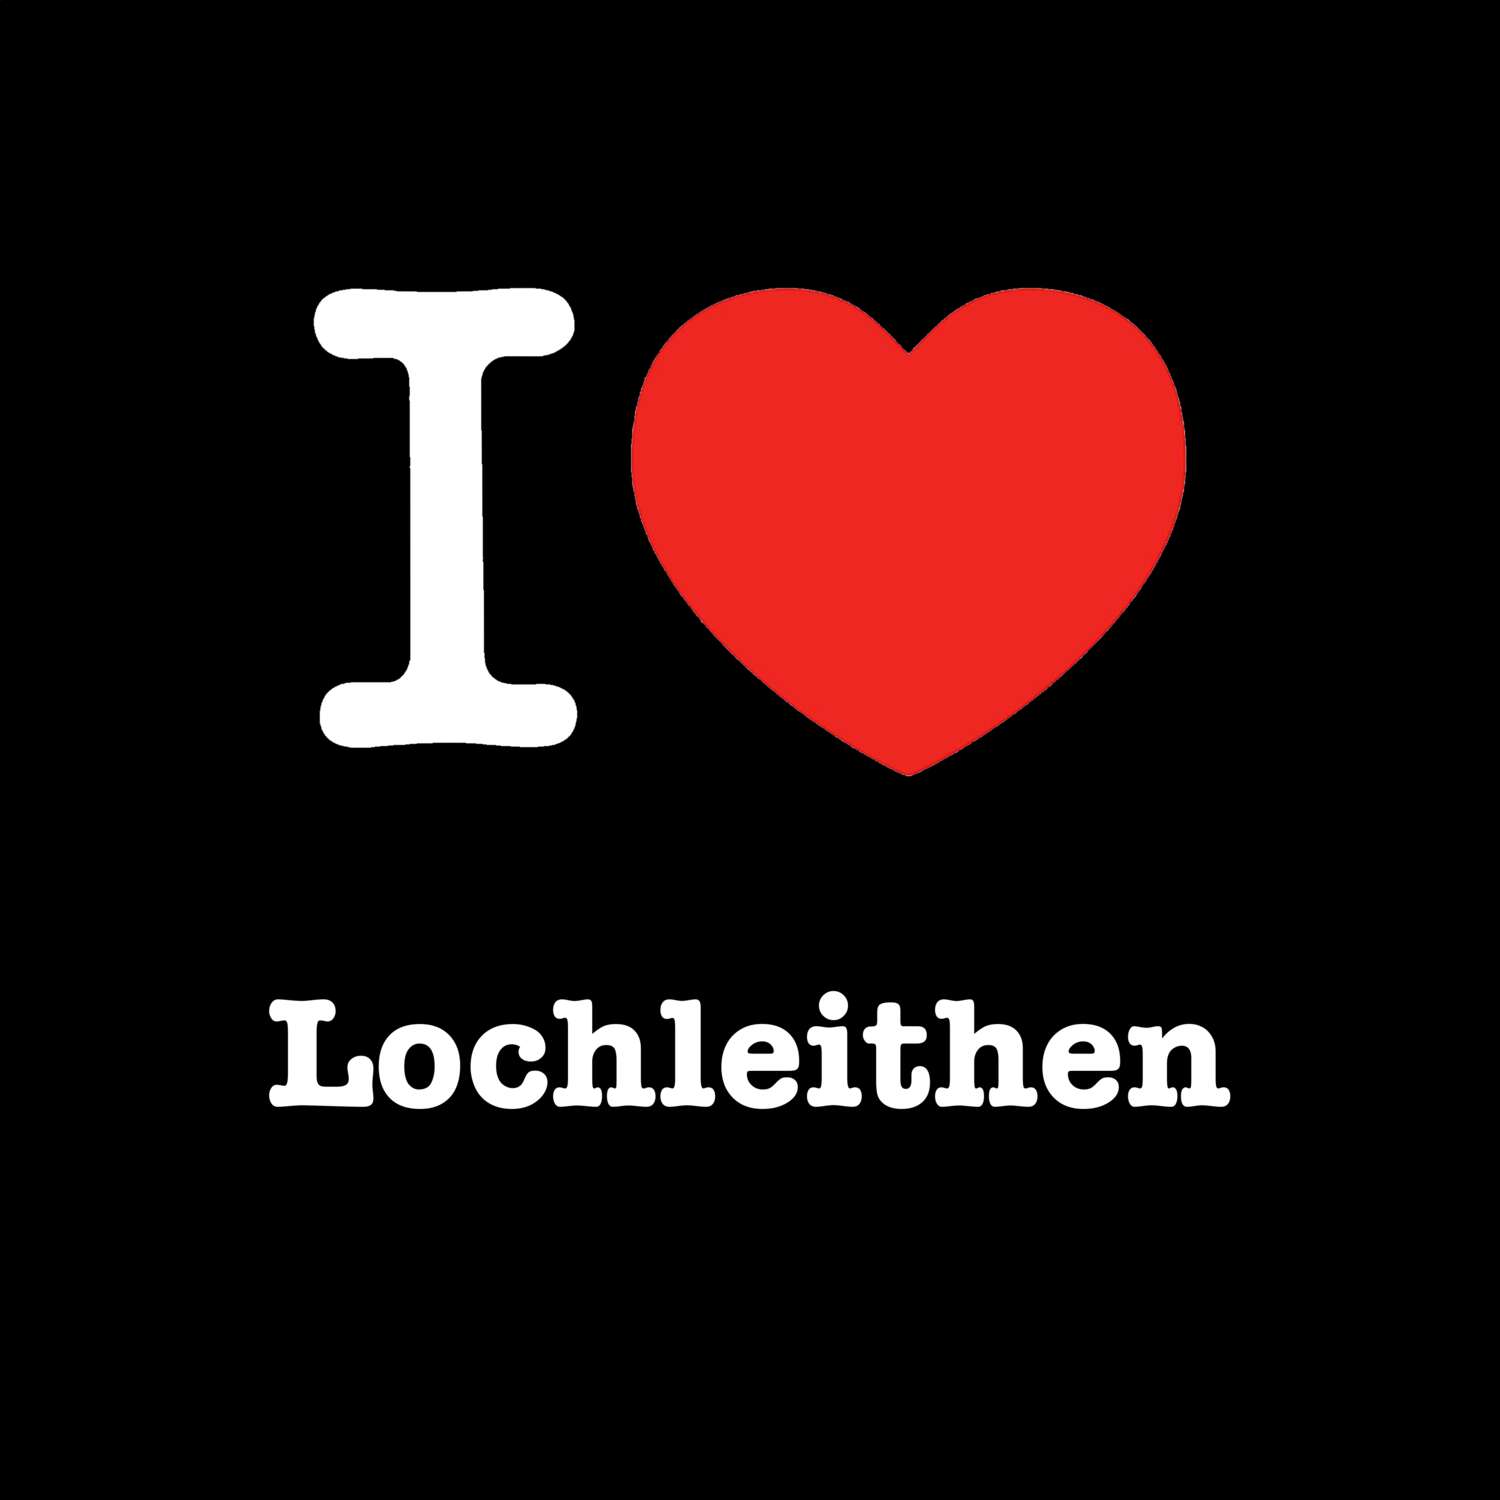 Lochleithen T-Shirt »I love«